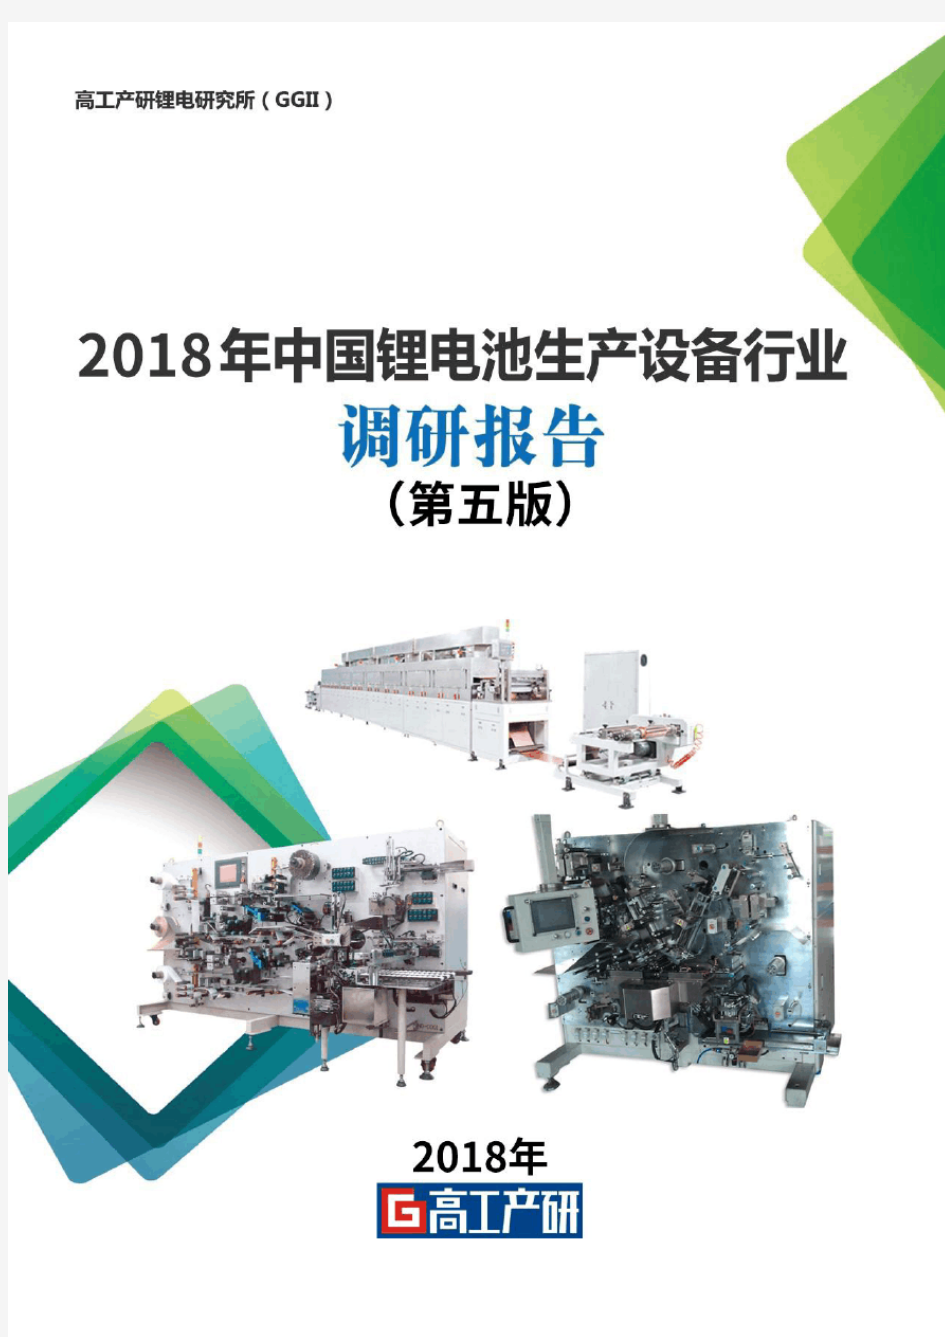 2018年中国锂电池设备行业调研报告-GGII(第五版)-目录-0322